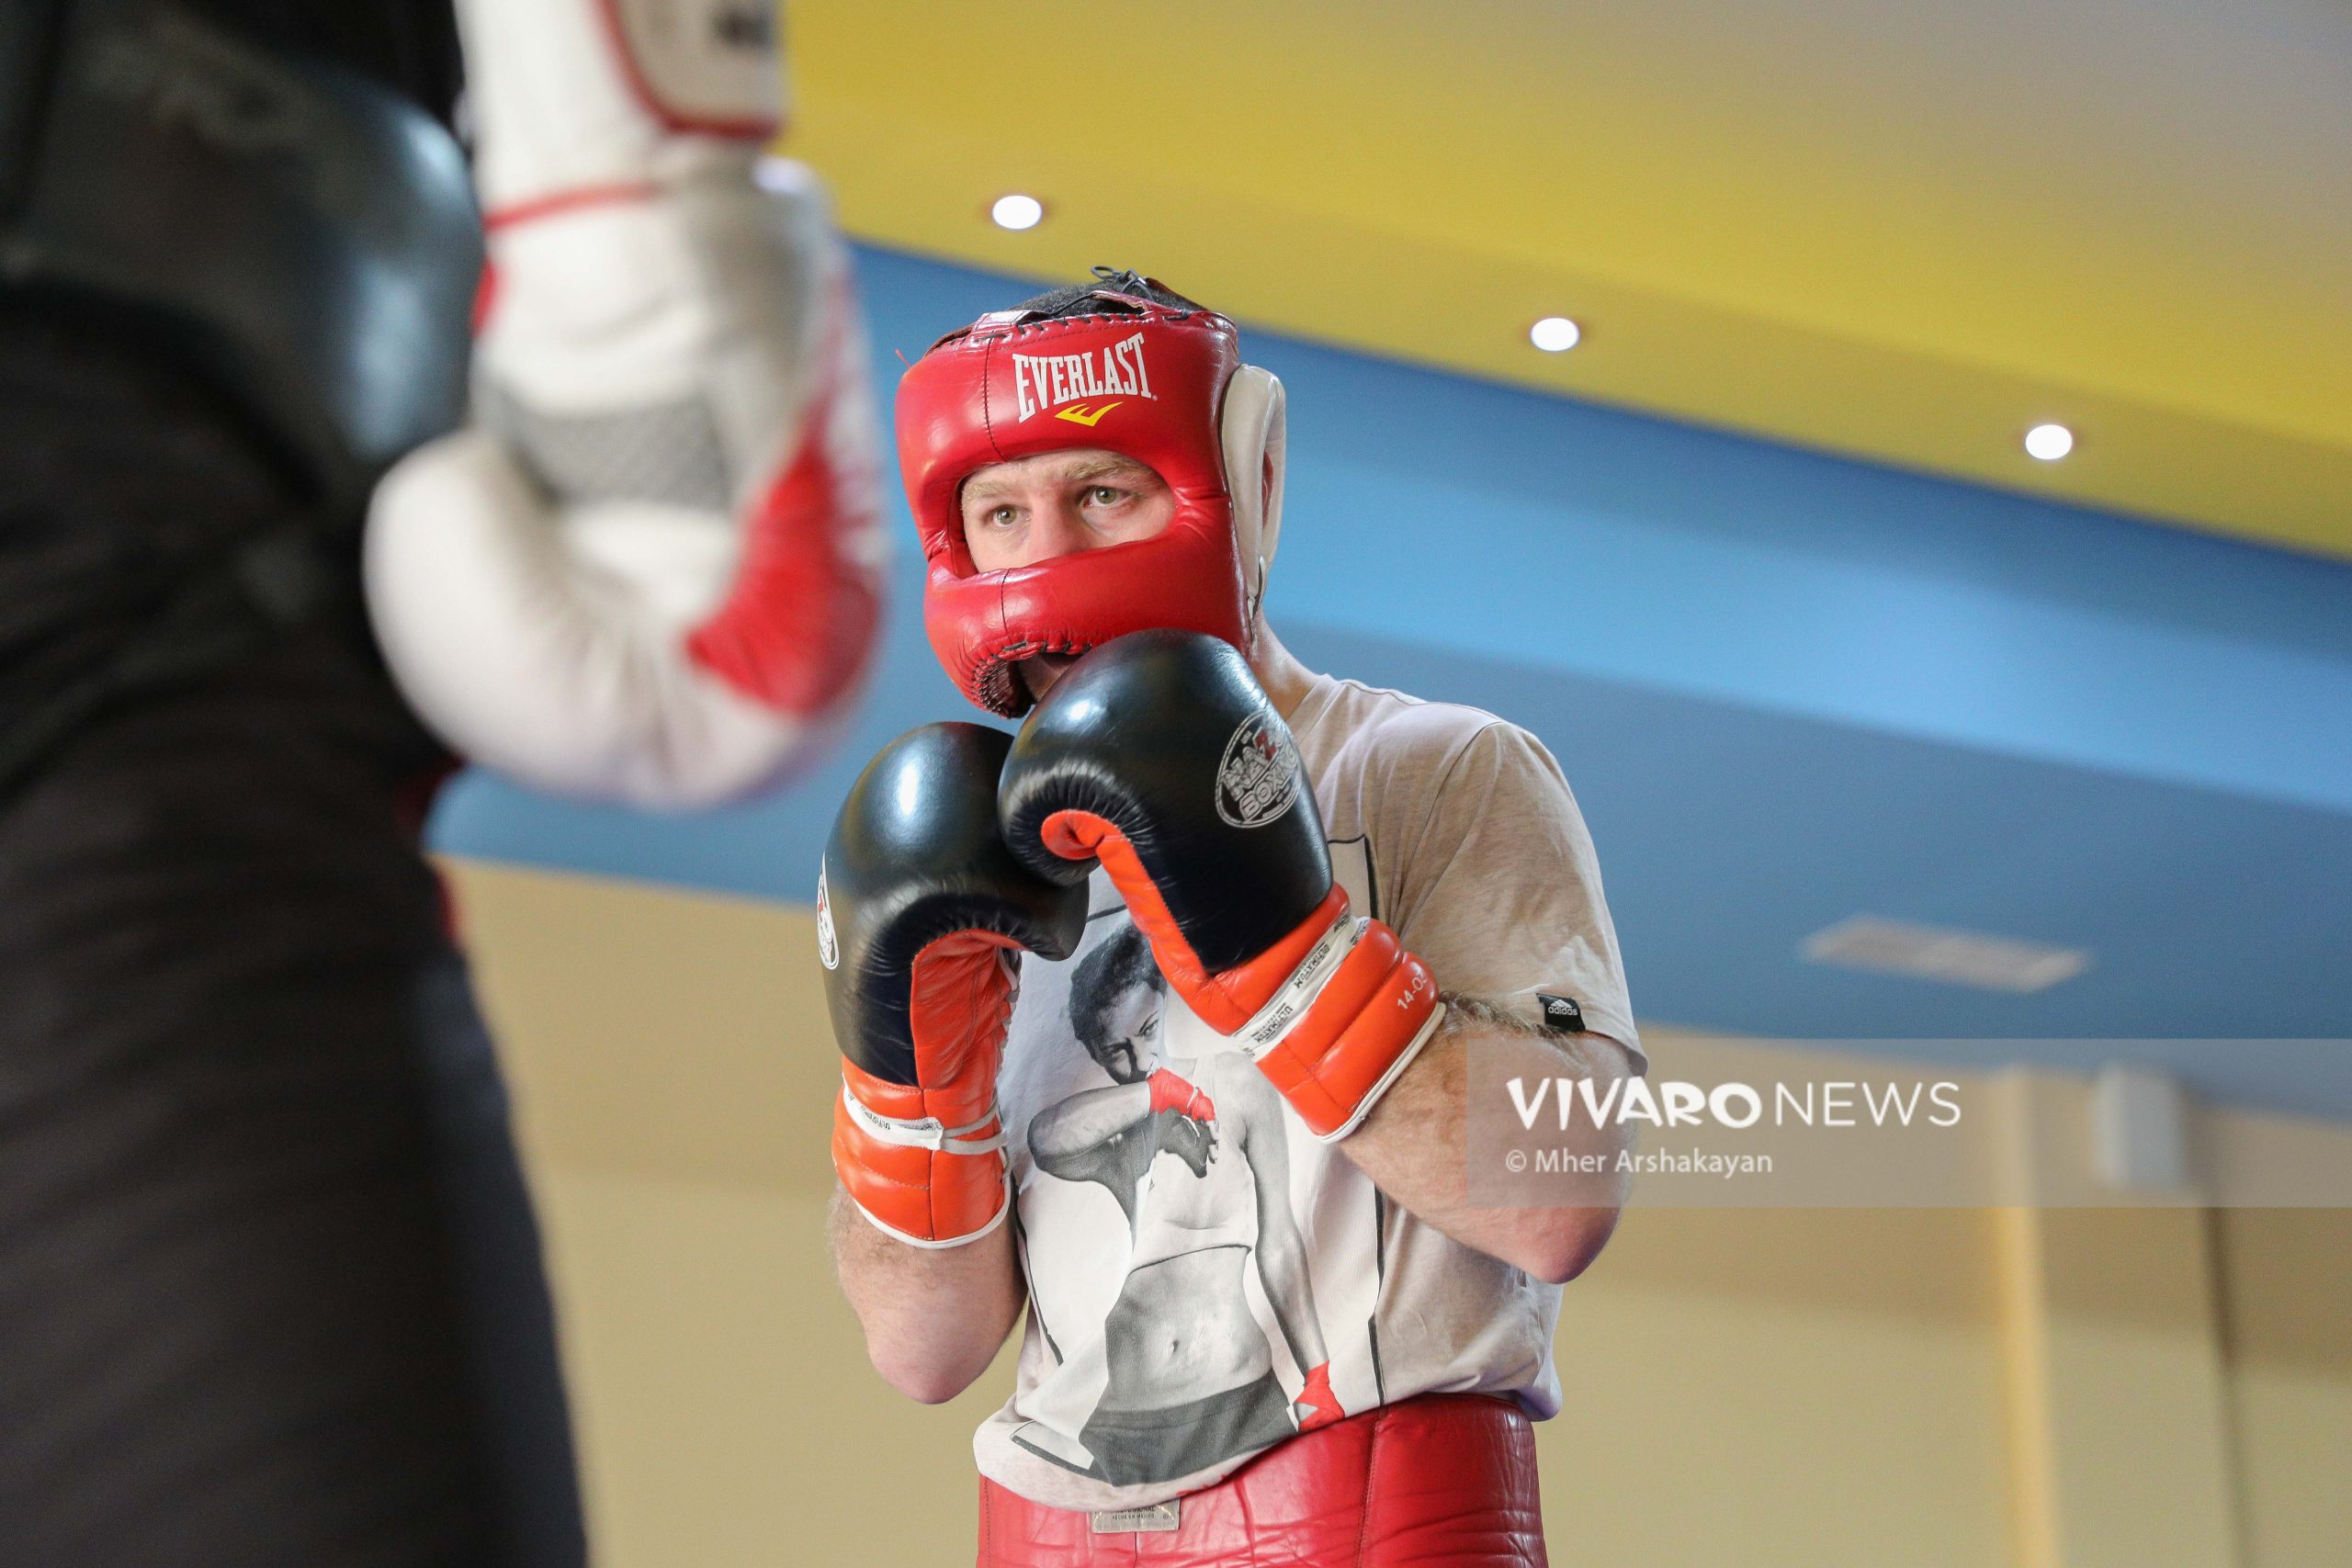 arman darchinyan boxing training 10 scaled - Դեպի տարվա առաջին քննություն. հայ բռնցքամարտիկների մարզումը լուսանկարներով